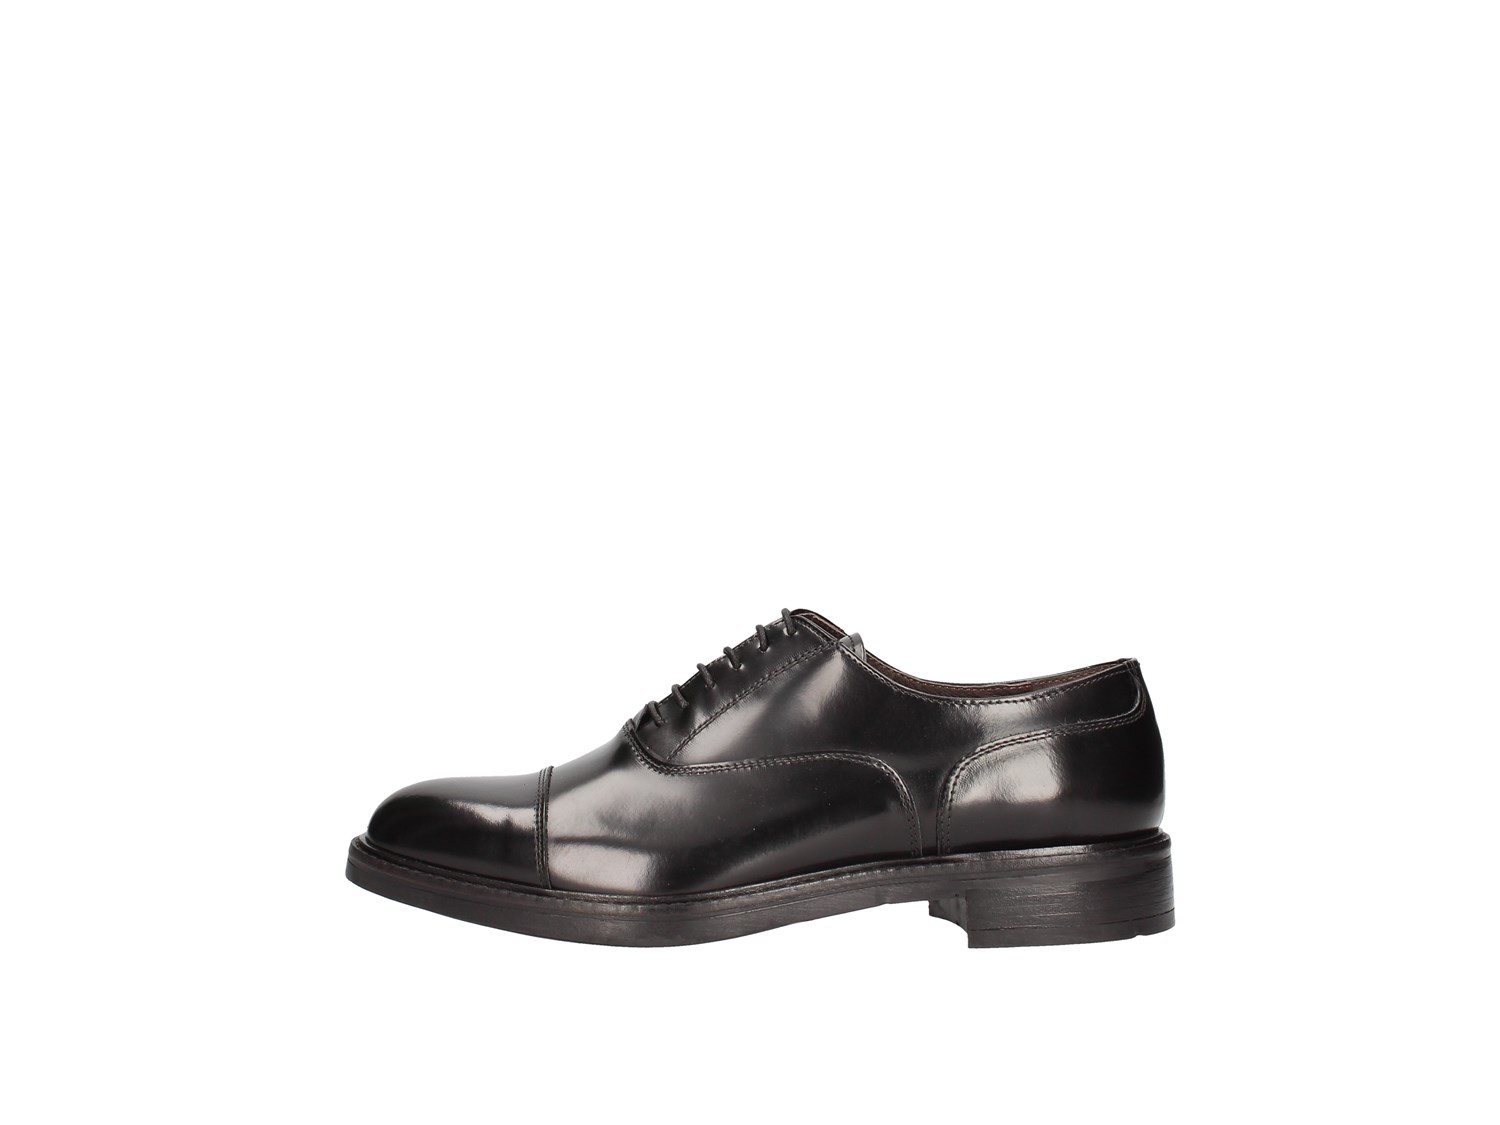 J.b.willis 1006-1 Black Shoes Man Francesina